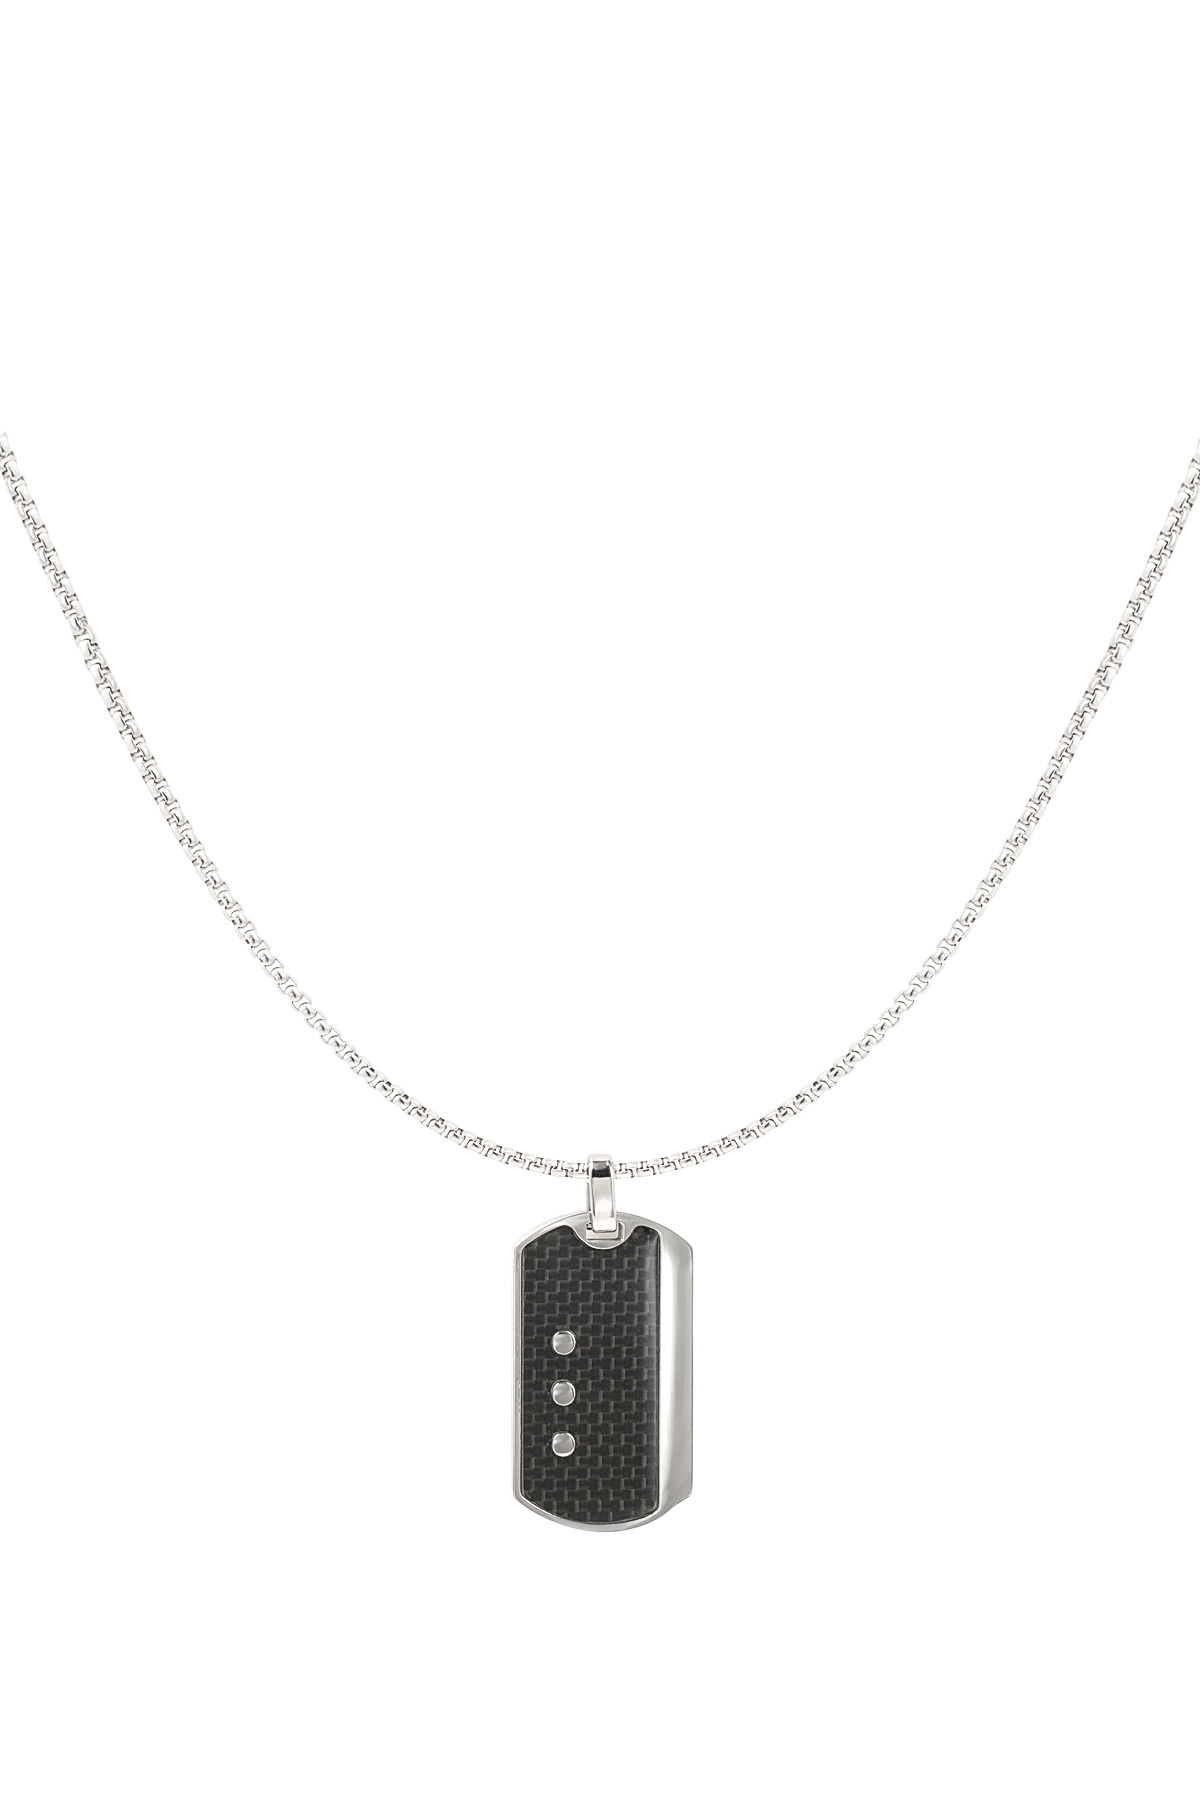 Men's necklace black charm - silver